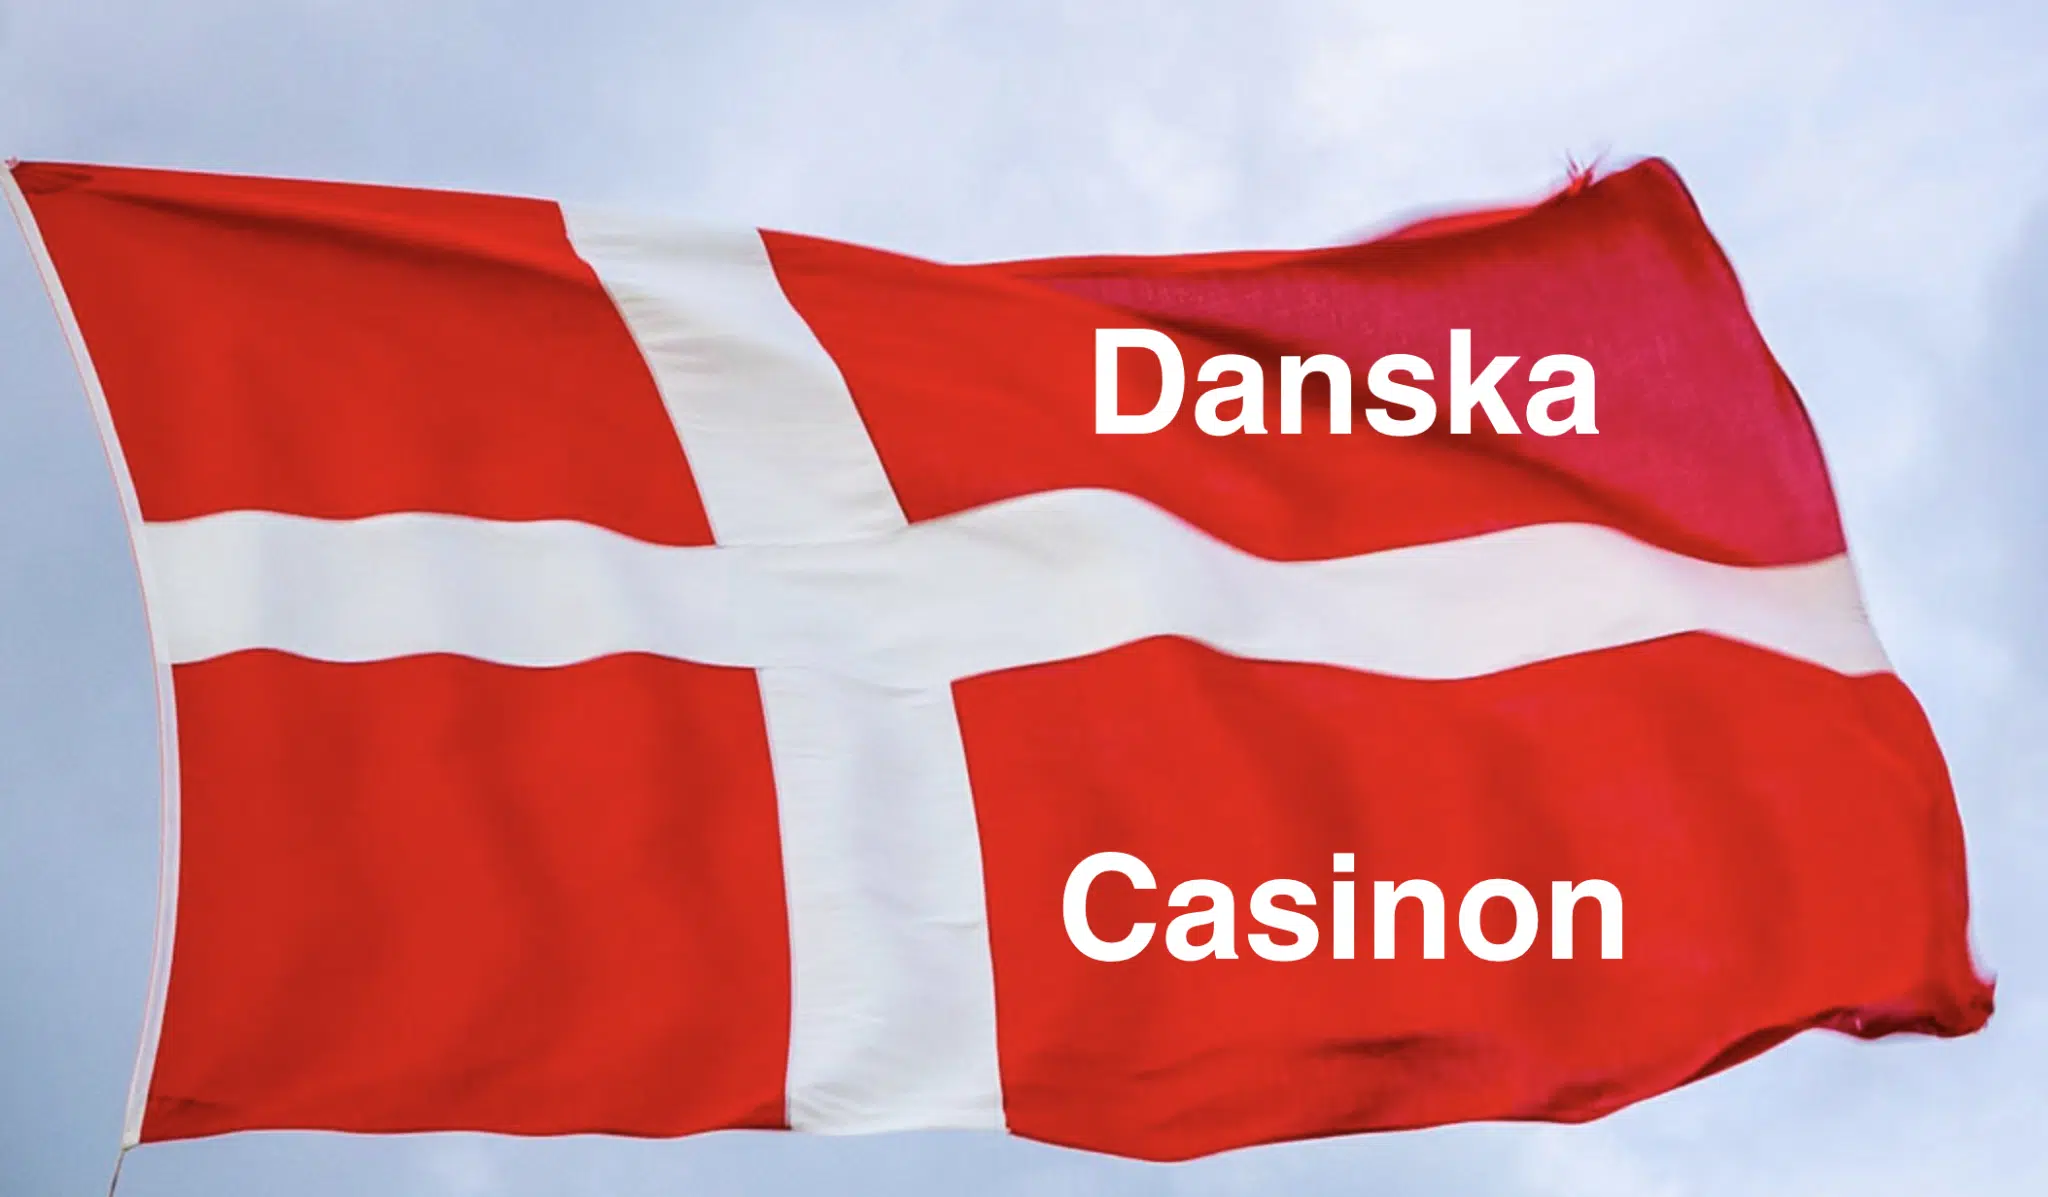 Danska flaggan i luften med ''Danska Casinon'' text